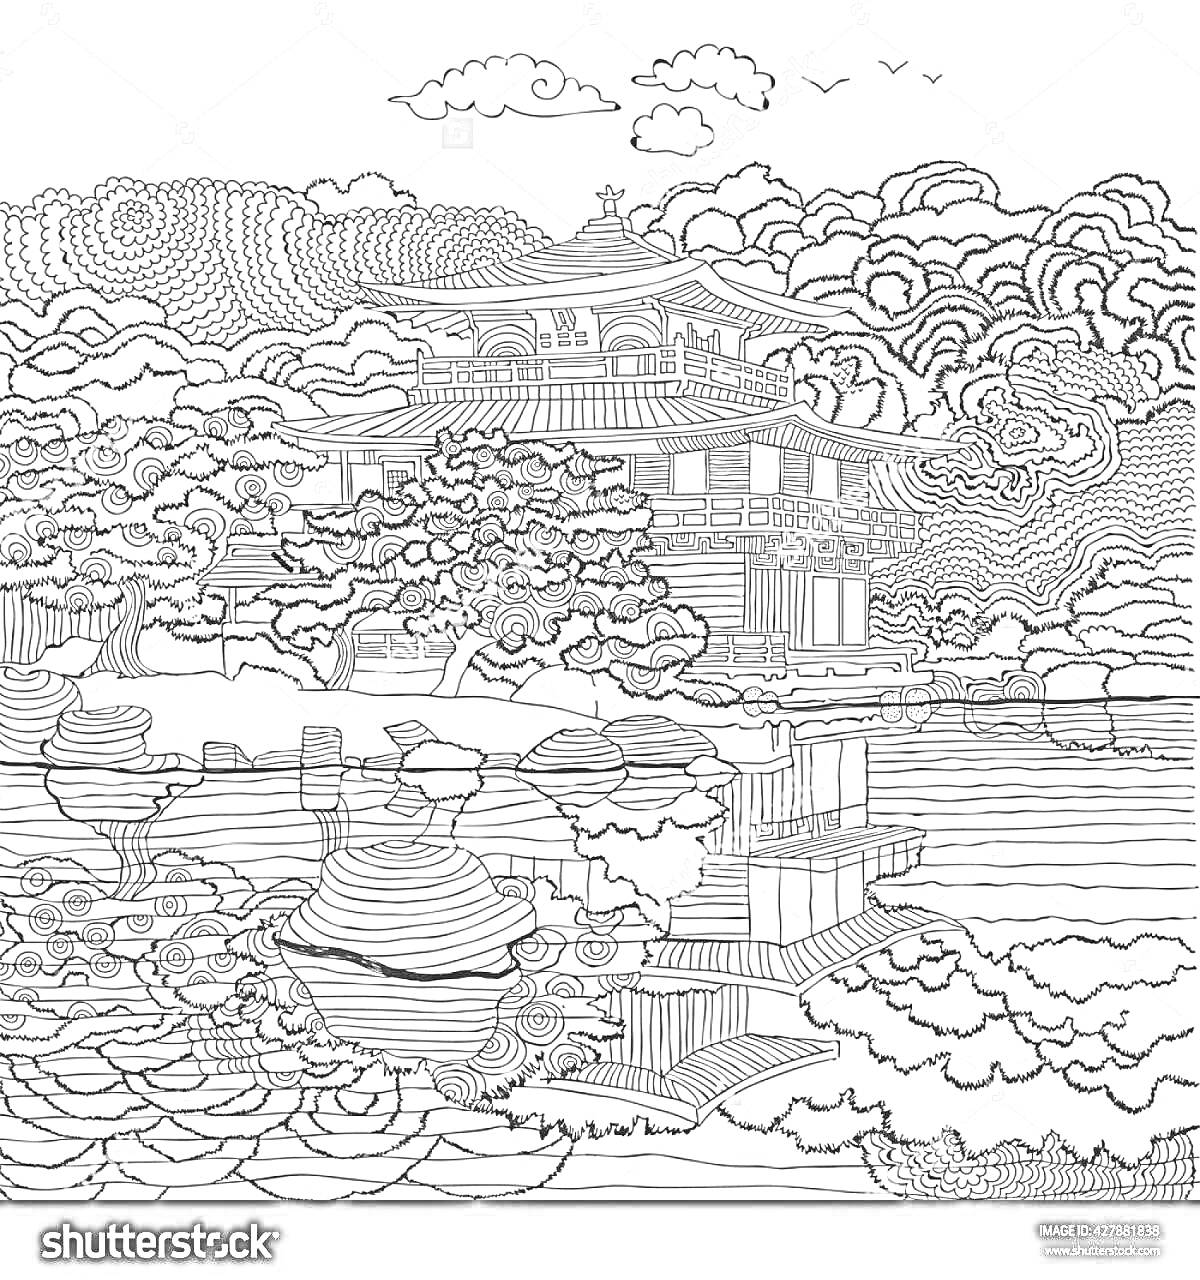 На раскраске изображено: Буддизм, Пагода, Природный пейзаж, Деревья, Пруд, Архитектура, Японский стиль